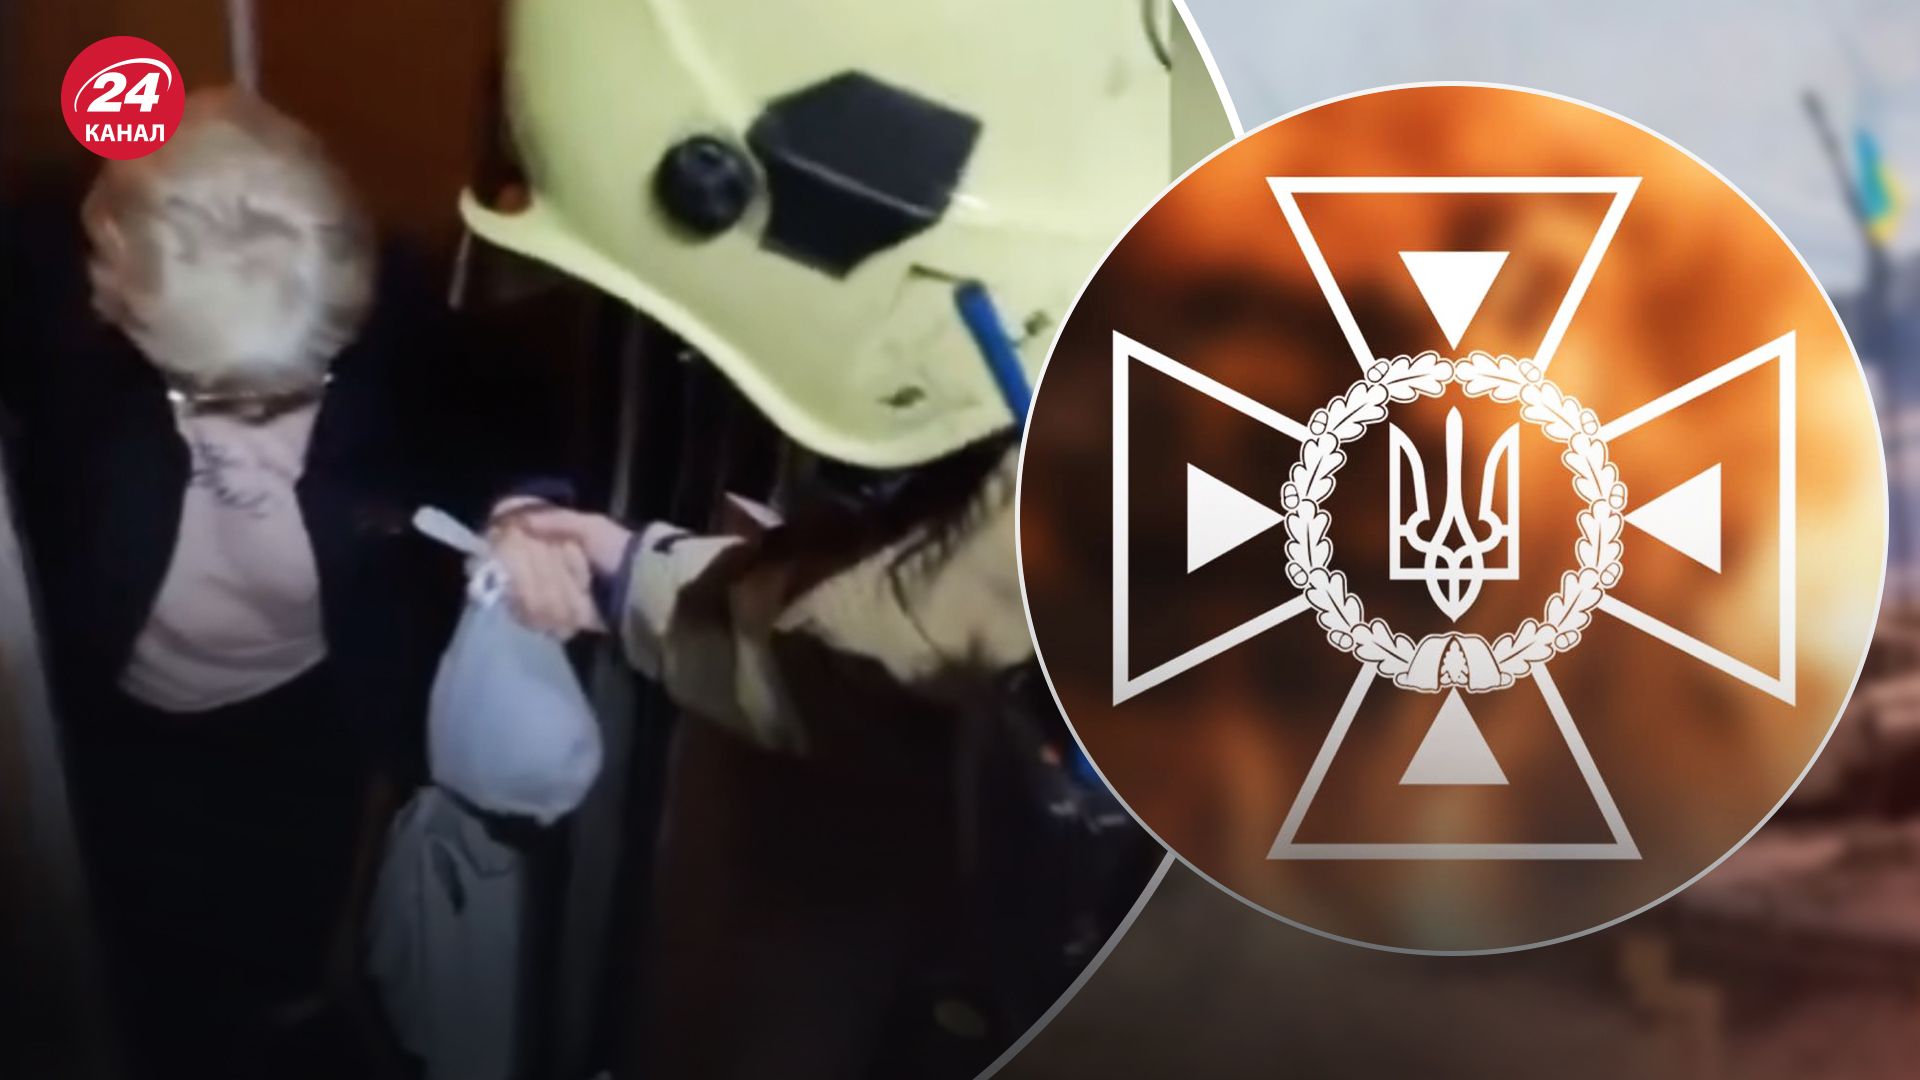 Пожилая женщина сорвалась в лифте в Оболонском районе Киева